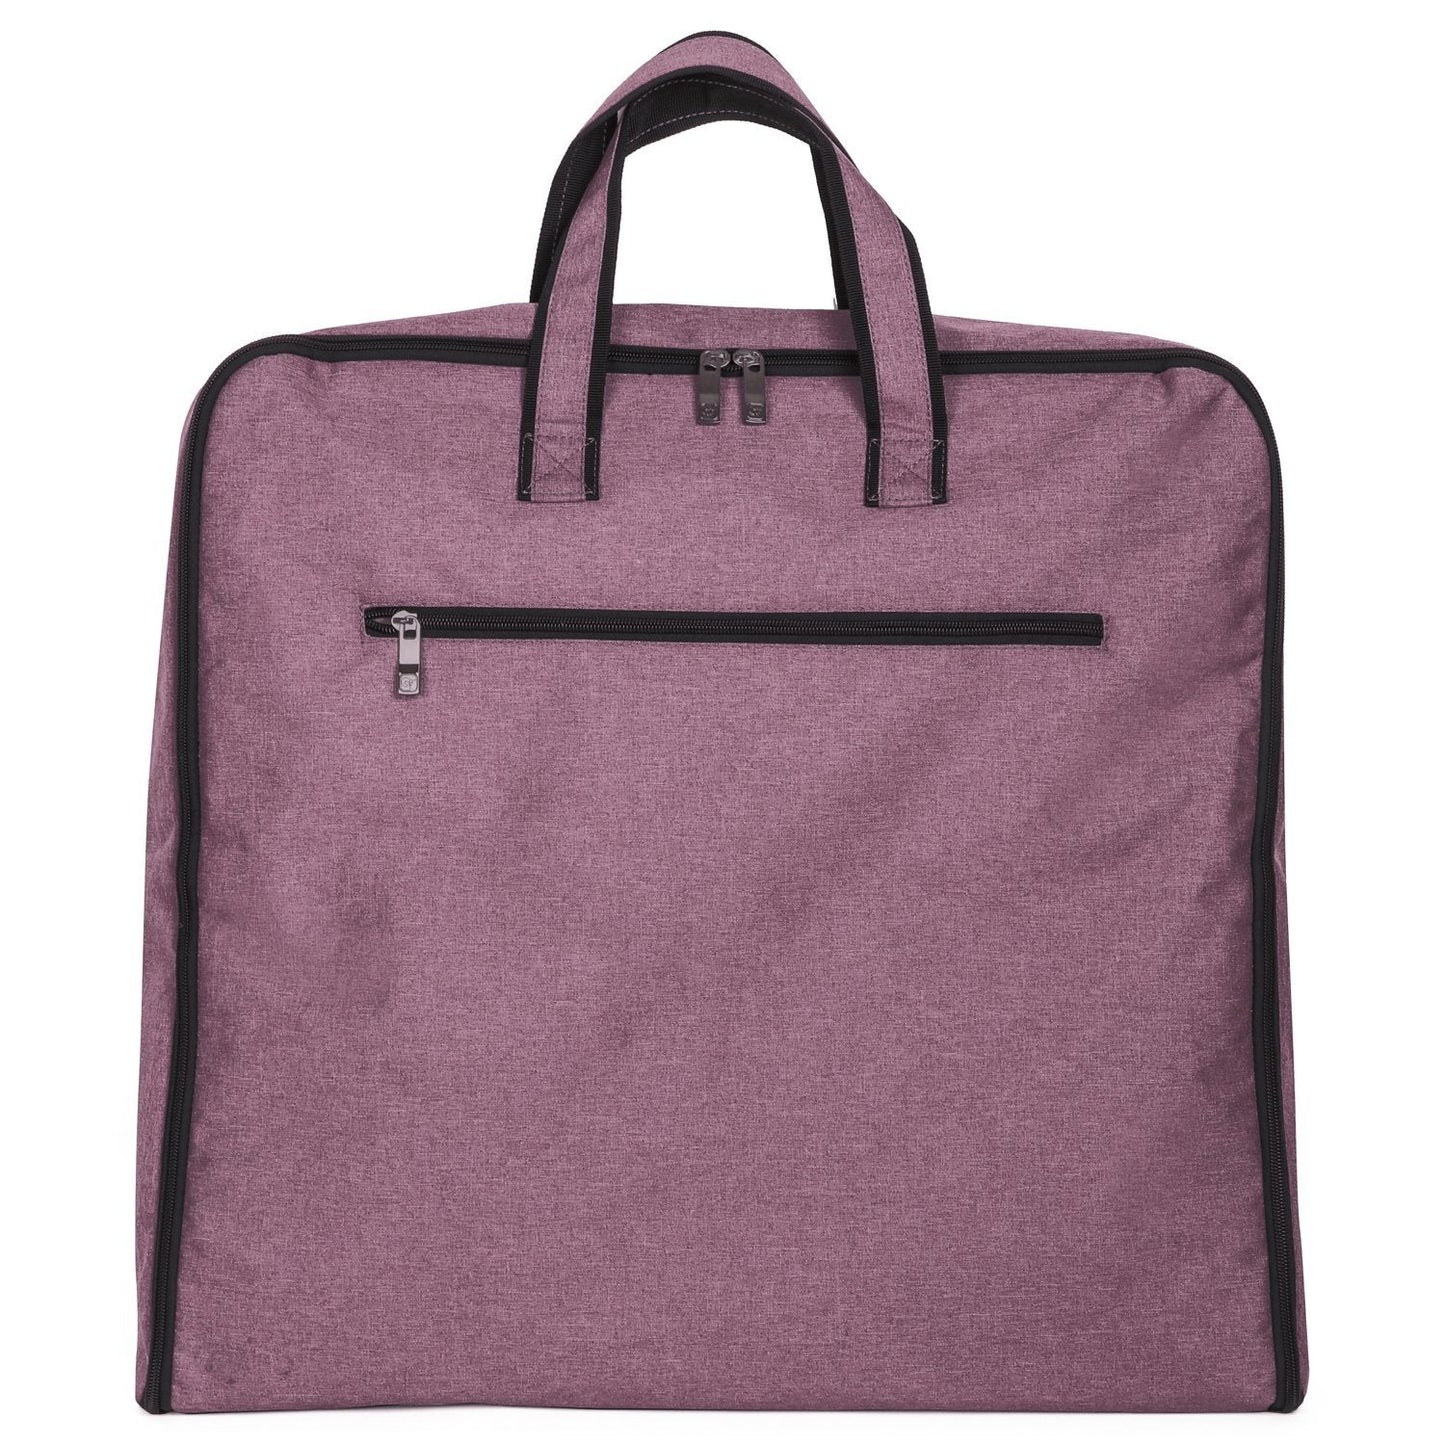 Chambray Colored Garment Bag